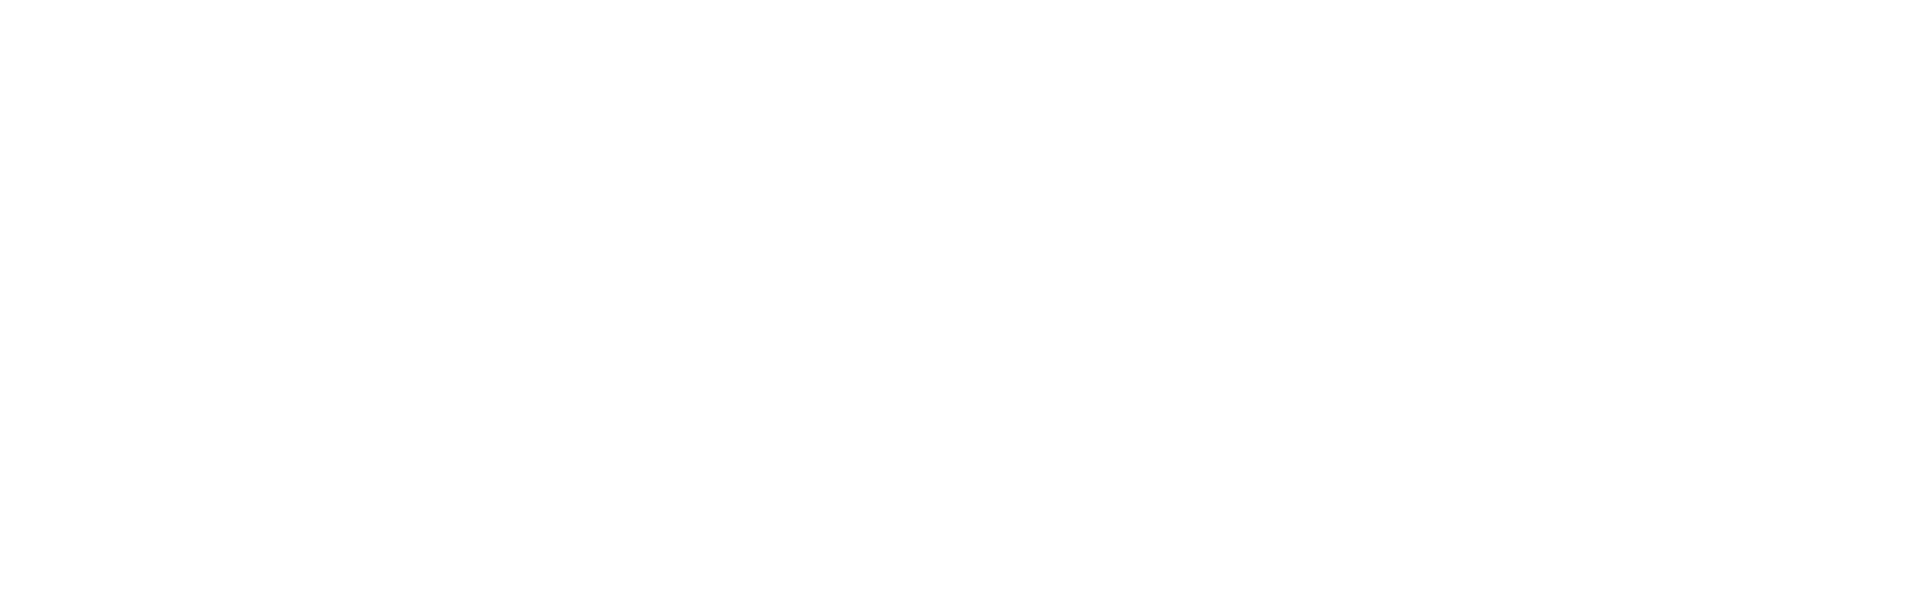 Energy Serv's Logo in White.